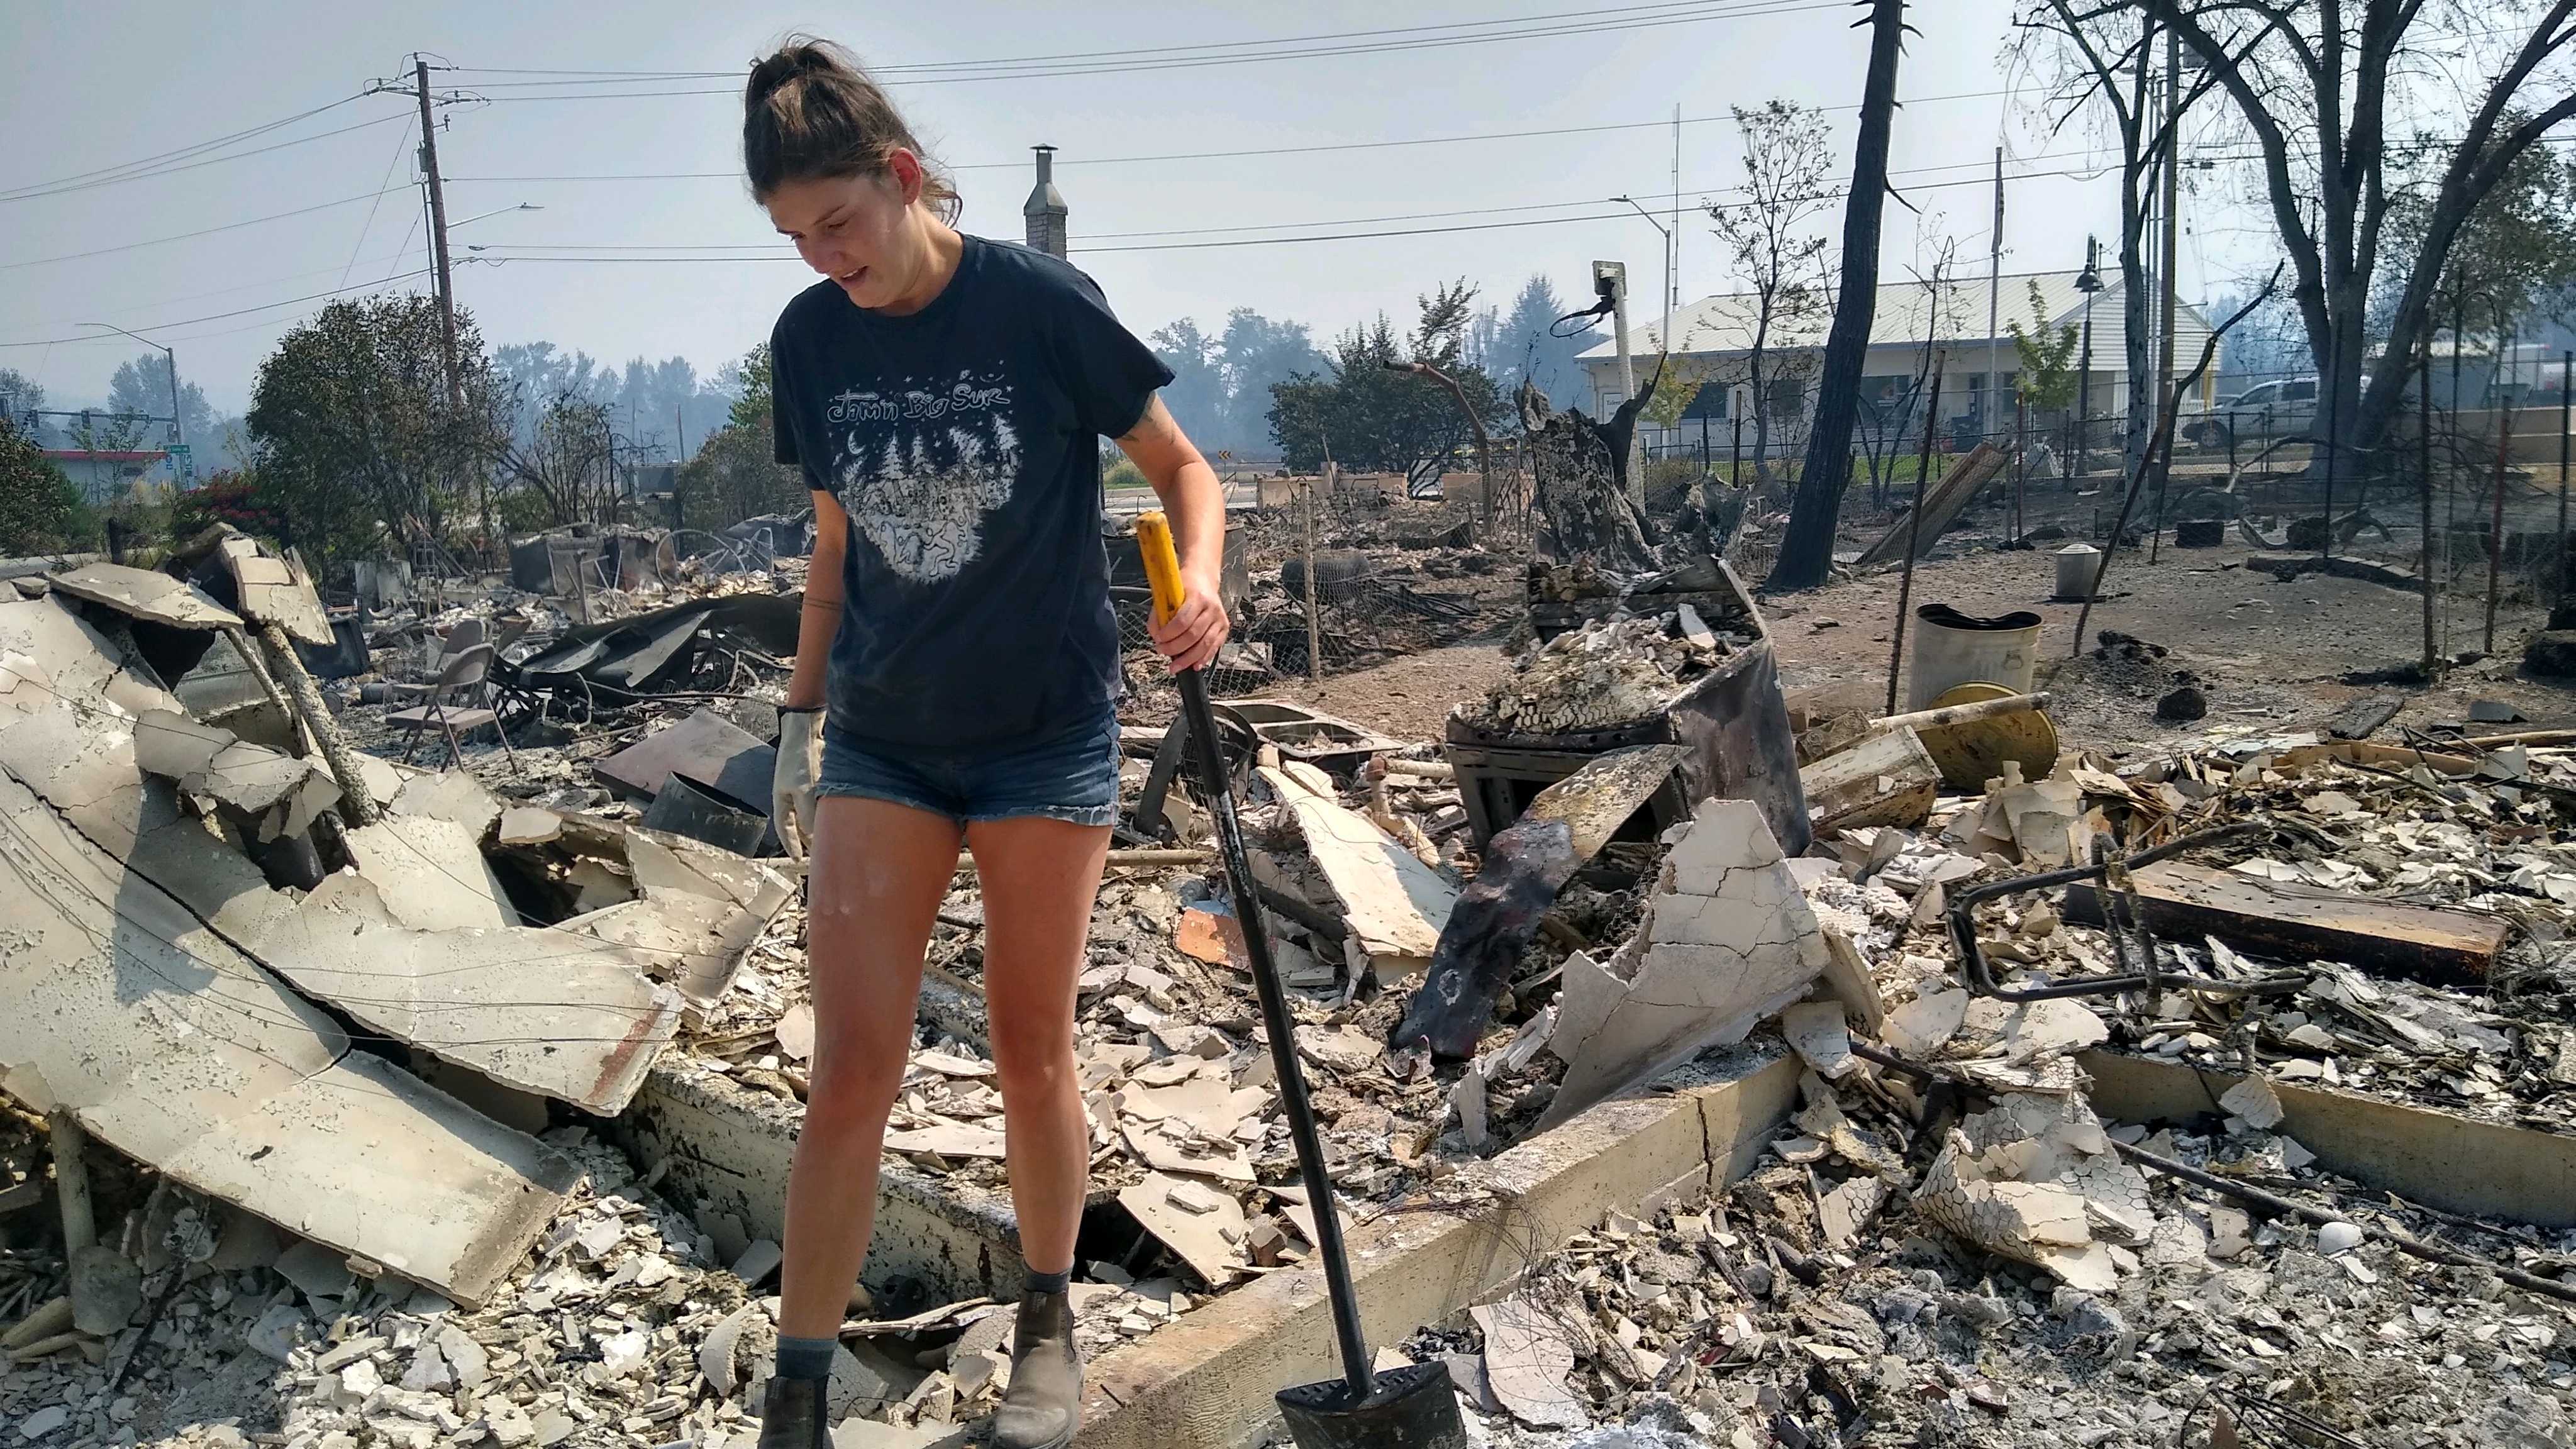 Incendies dans l'Oregon : la rumeur complotiste sur des pyromanes antifas  démentie par les autorités - Conspiracy Watch